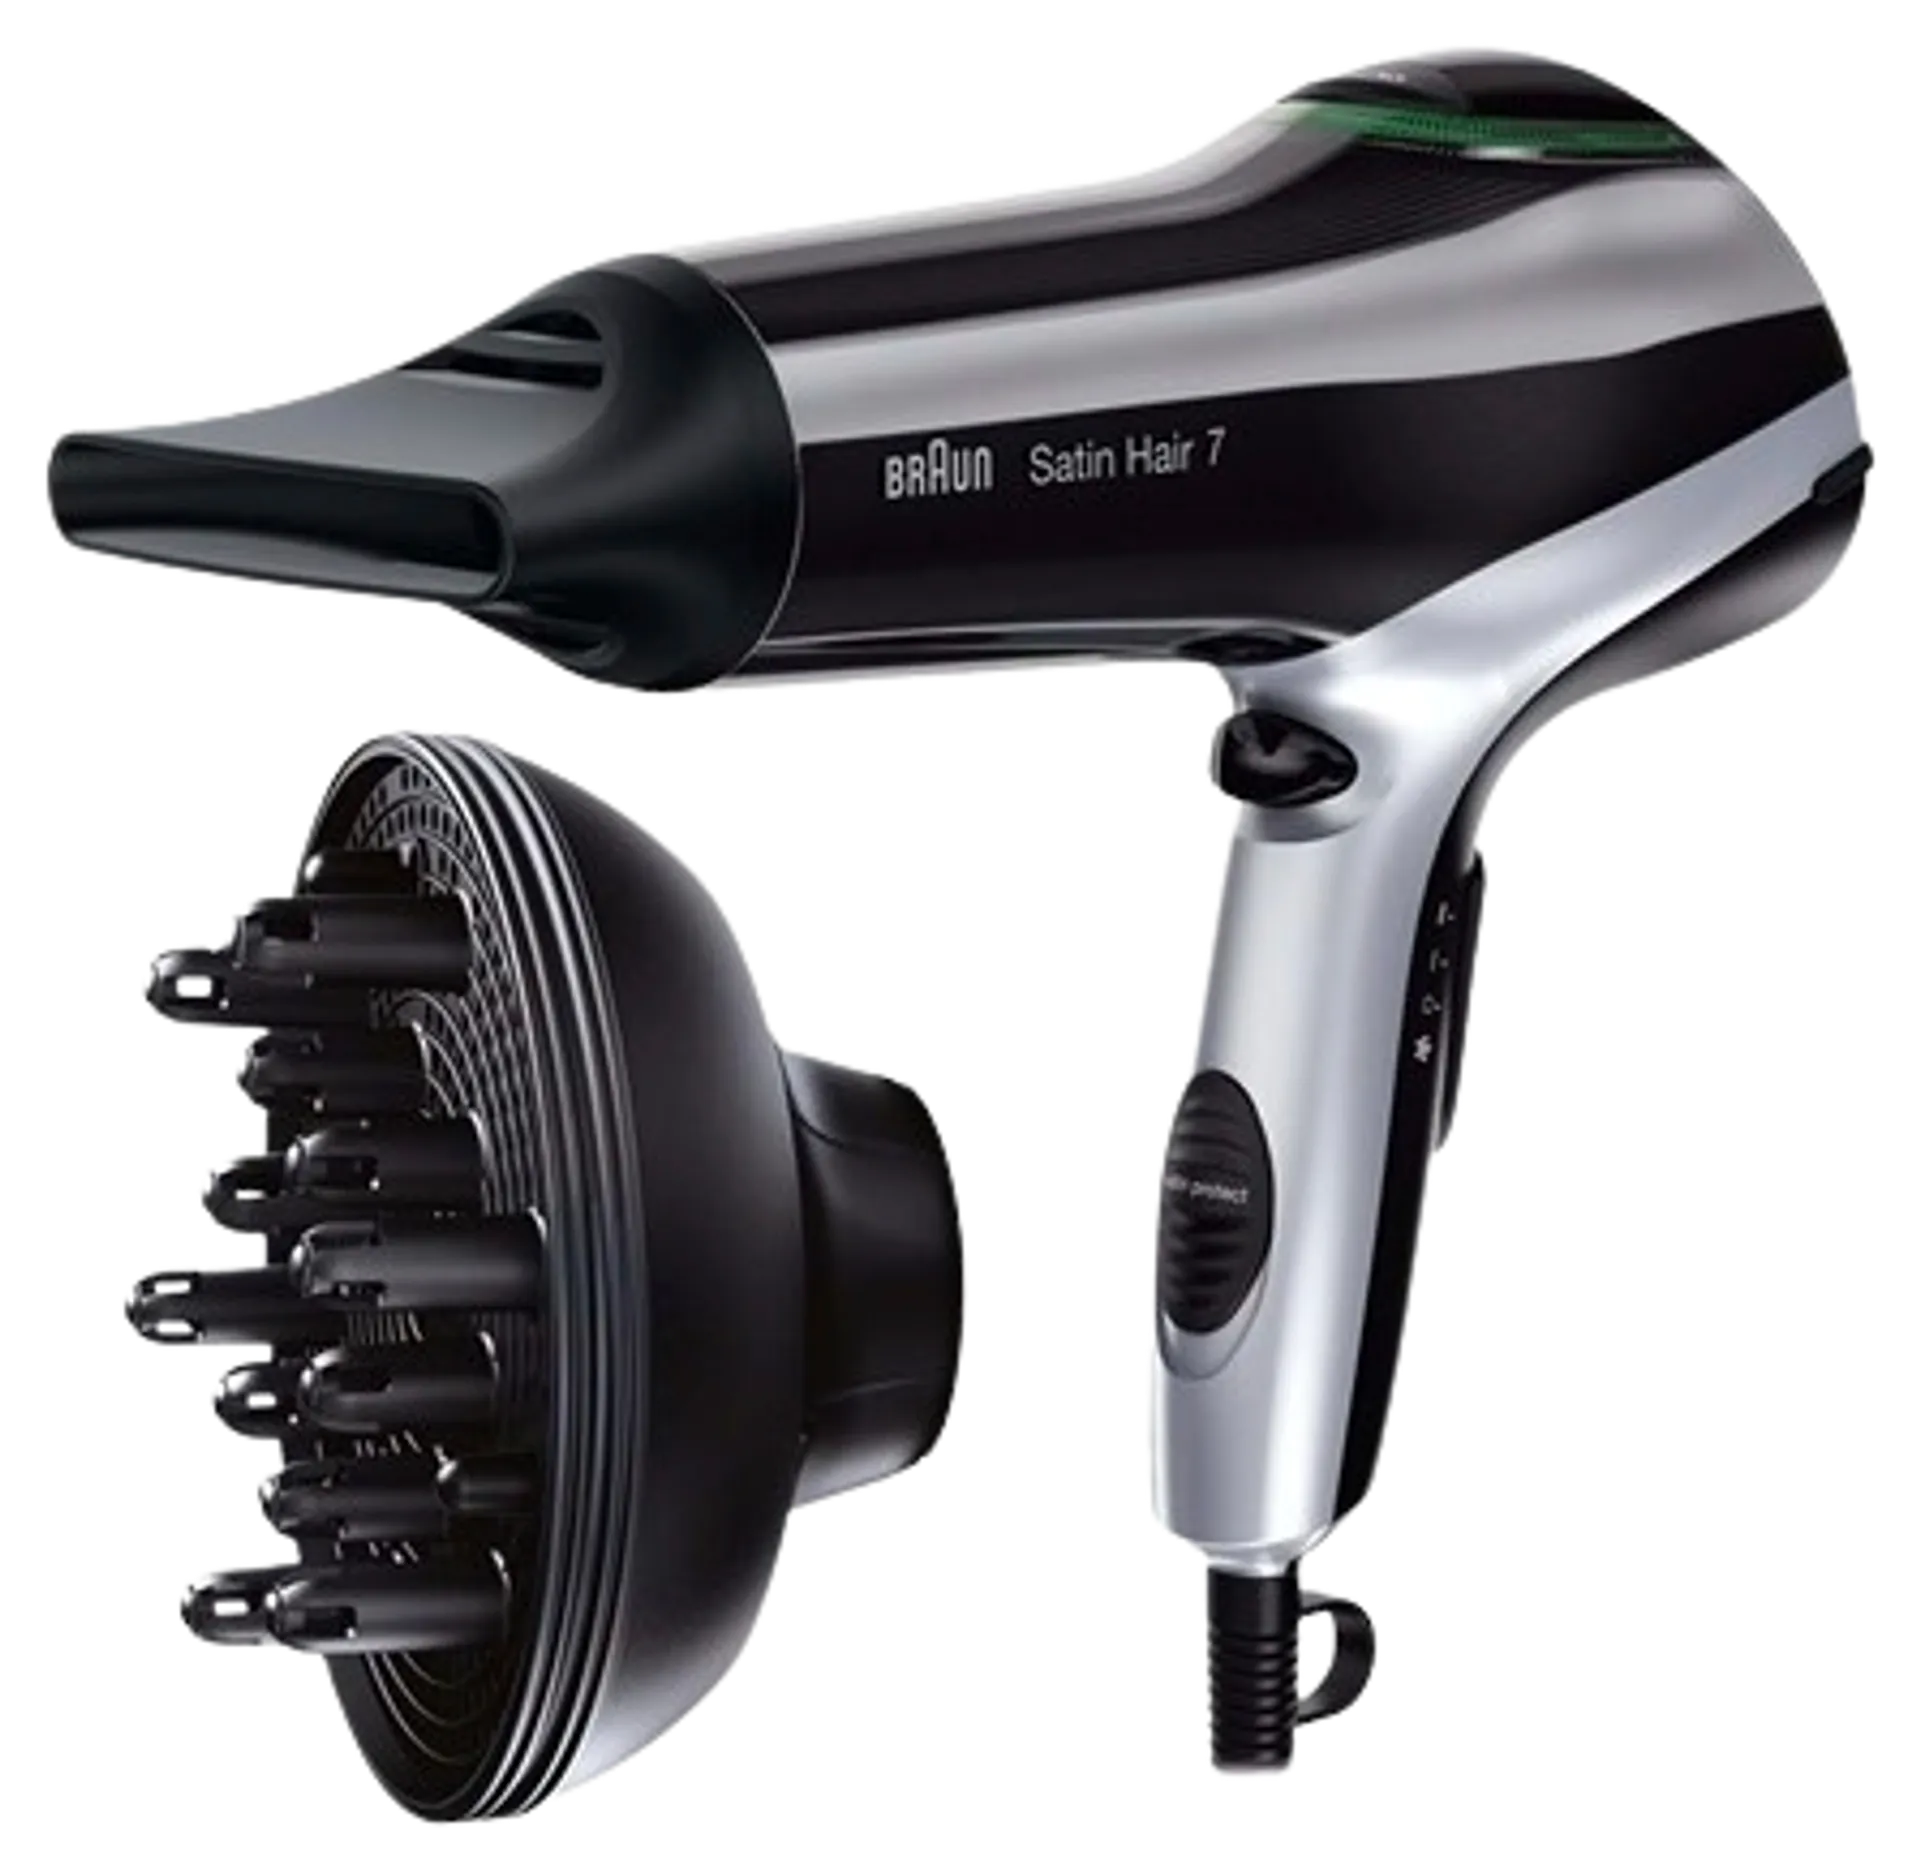 BRAUN HIUSTENKUIVAIN HD730 2200W, 3 lämpöasetusta. Satin Ion-tekniikan tuottama ionivirta rauhoittaa hiusta, vähentää pörröisyyttä ja staattisuutta antaen hiusten luonnollisen kauneuden ja kiillon - 2